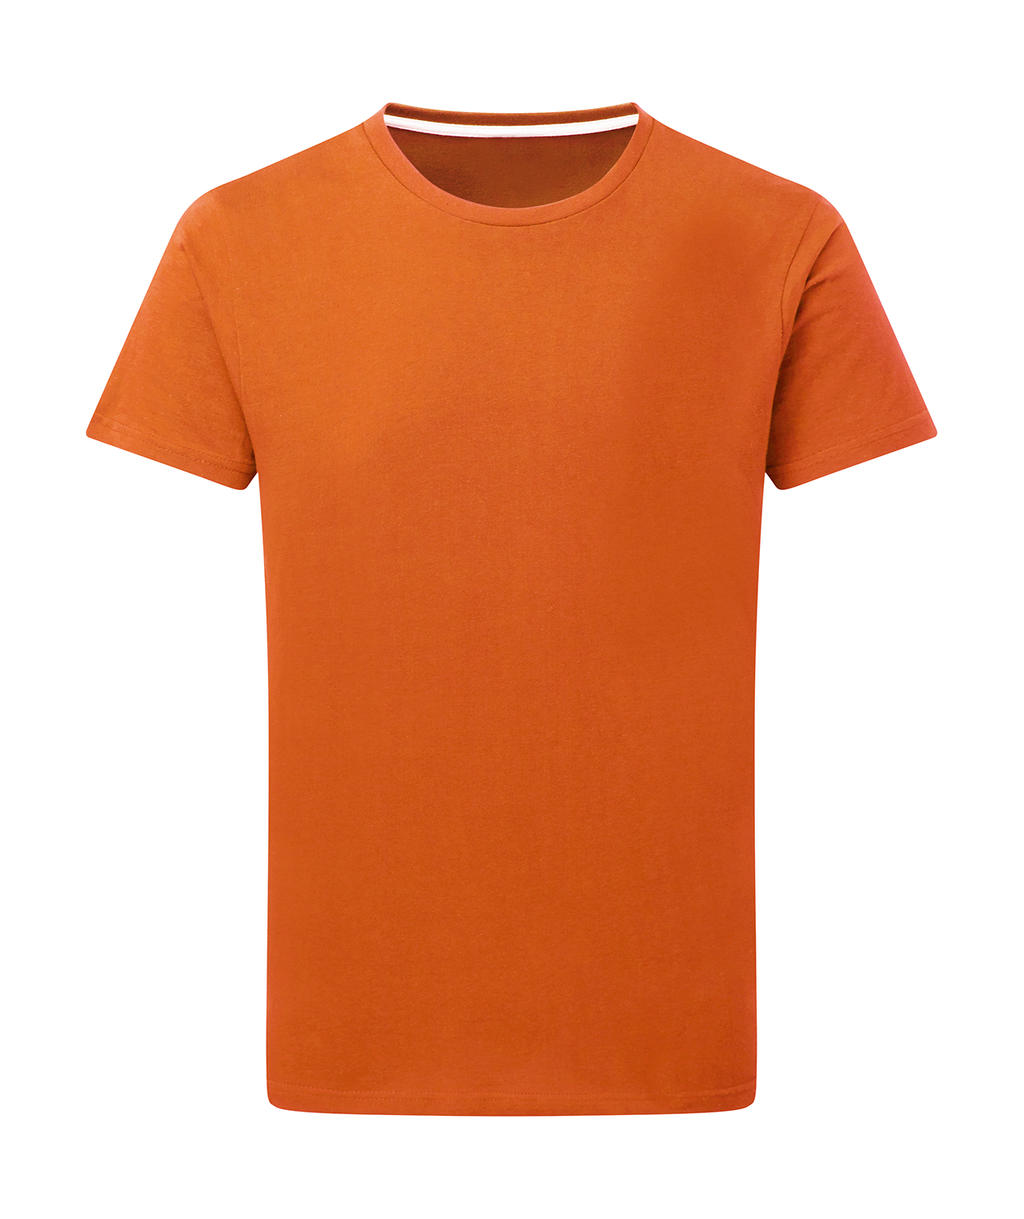 Dokonale potlačiteľné tričko bez štítku - orange